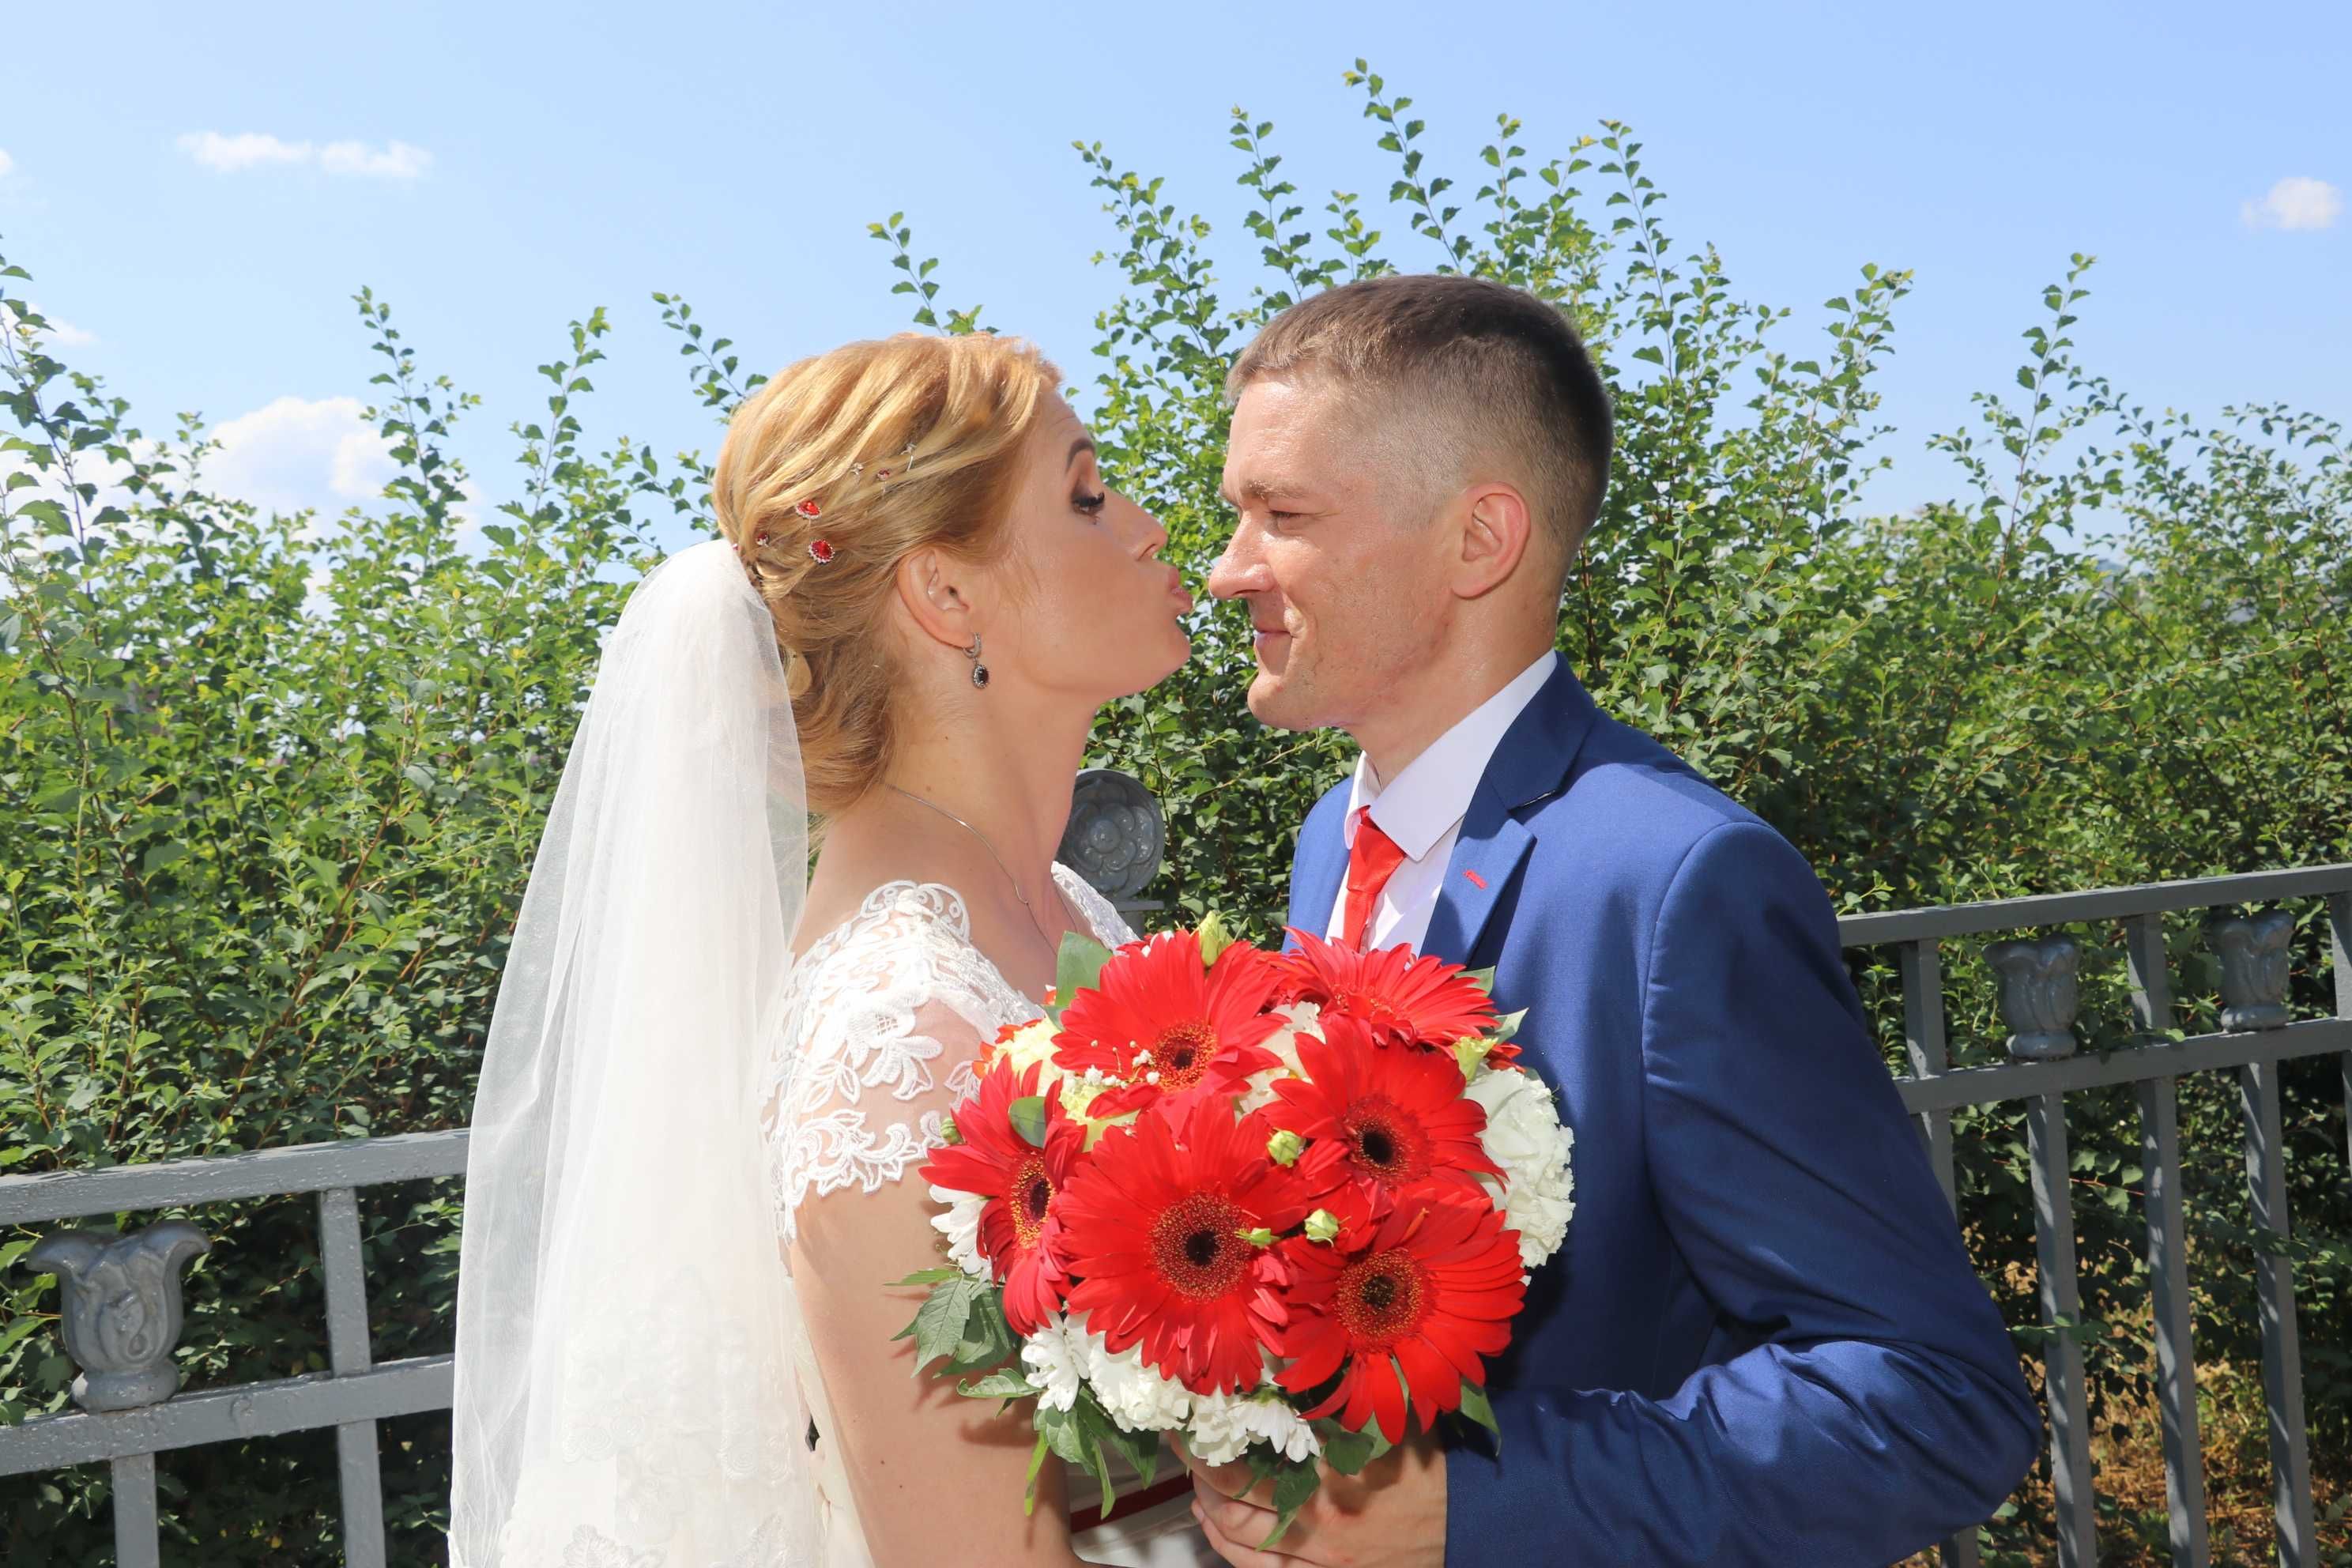 Kamerzysta/fotograf/film z drona na ślub i wesele w korzystnej cenie